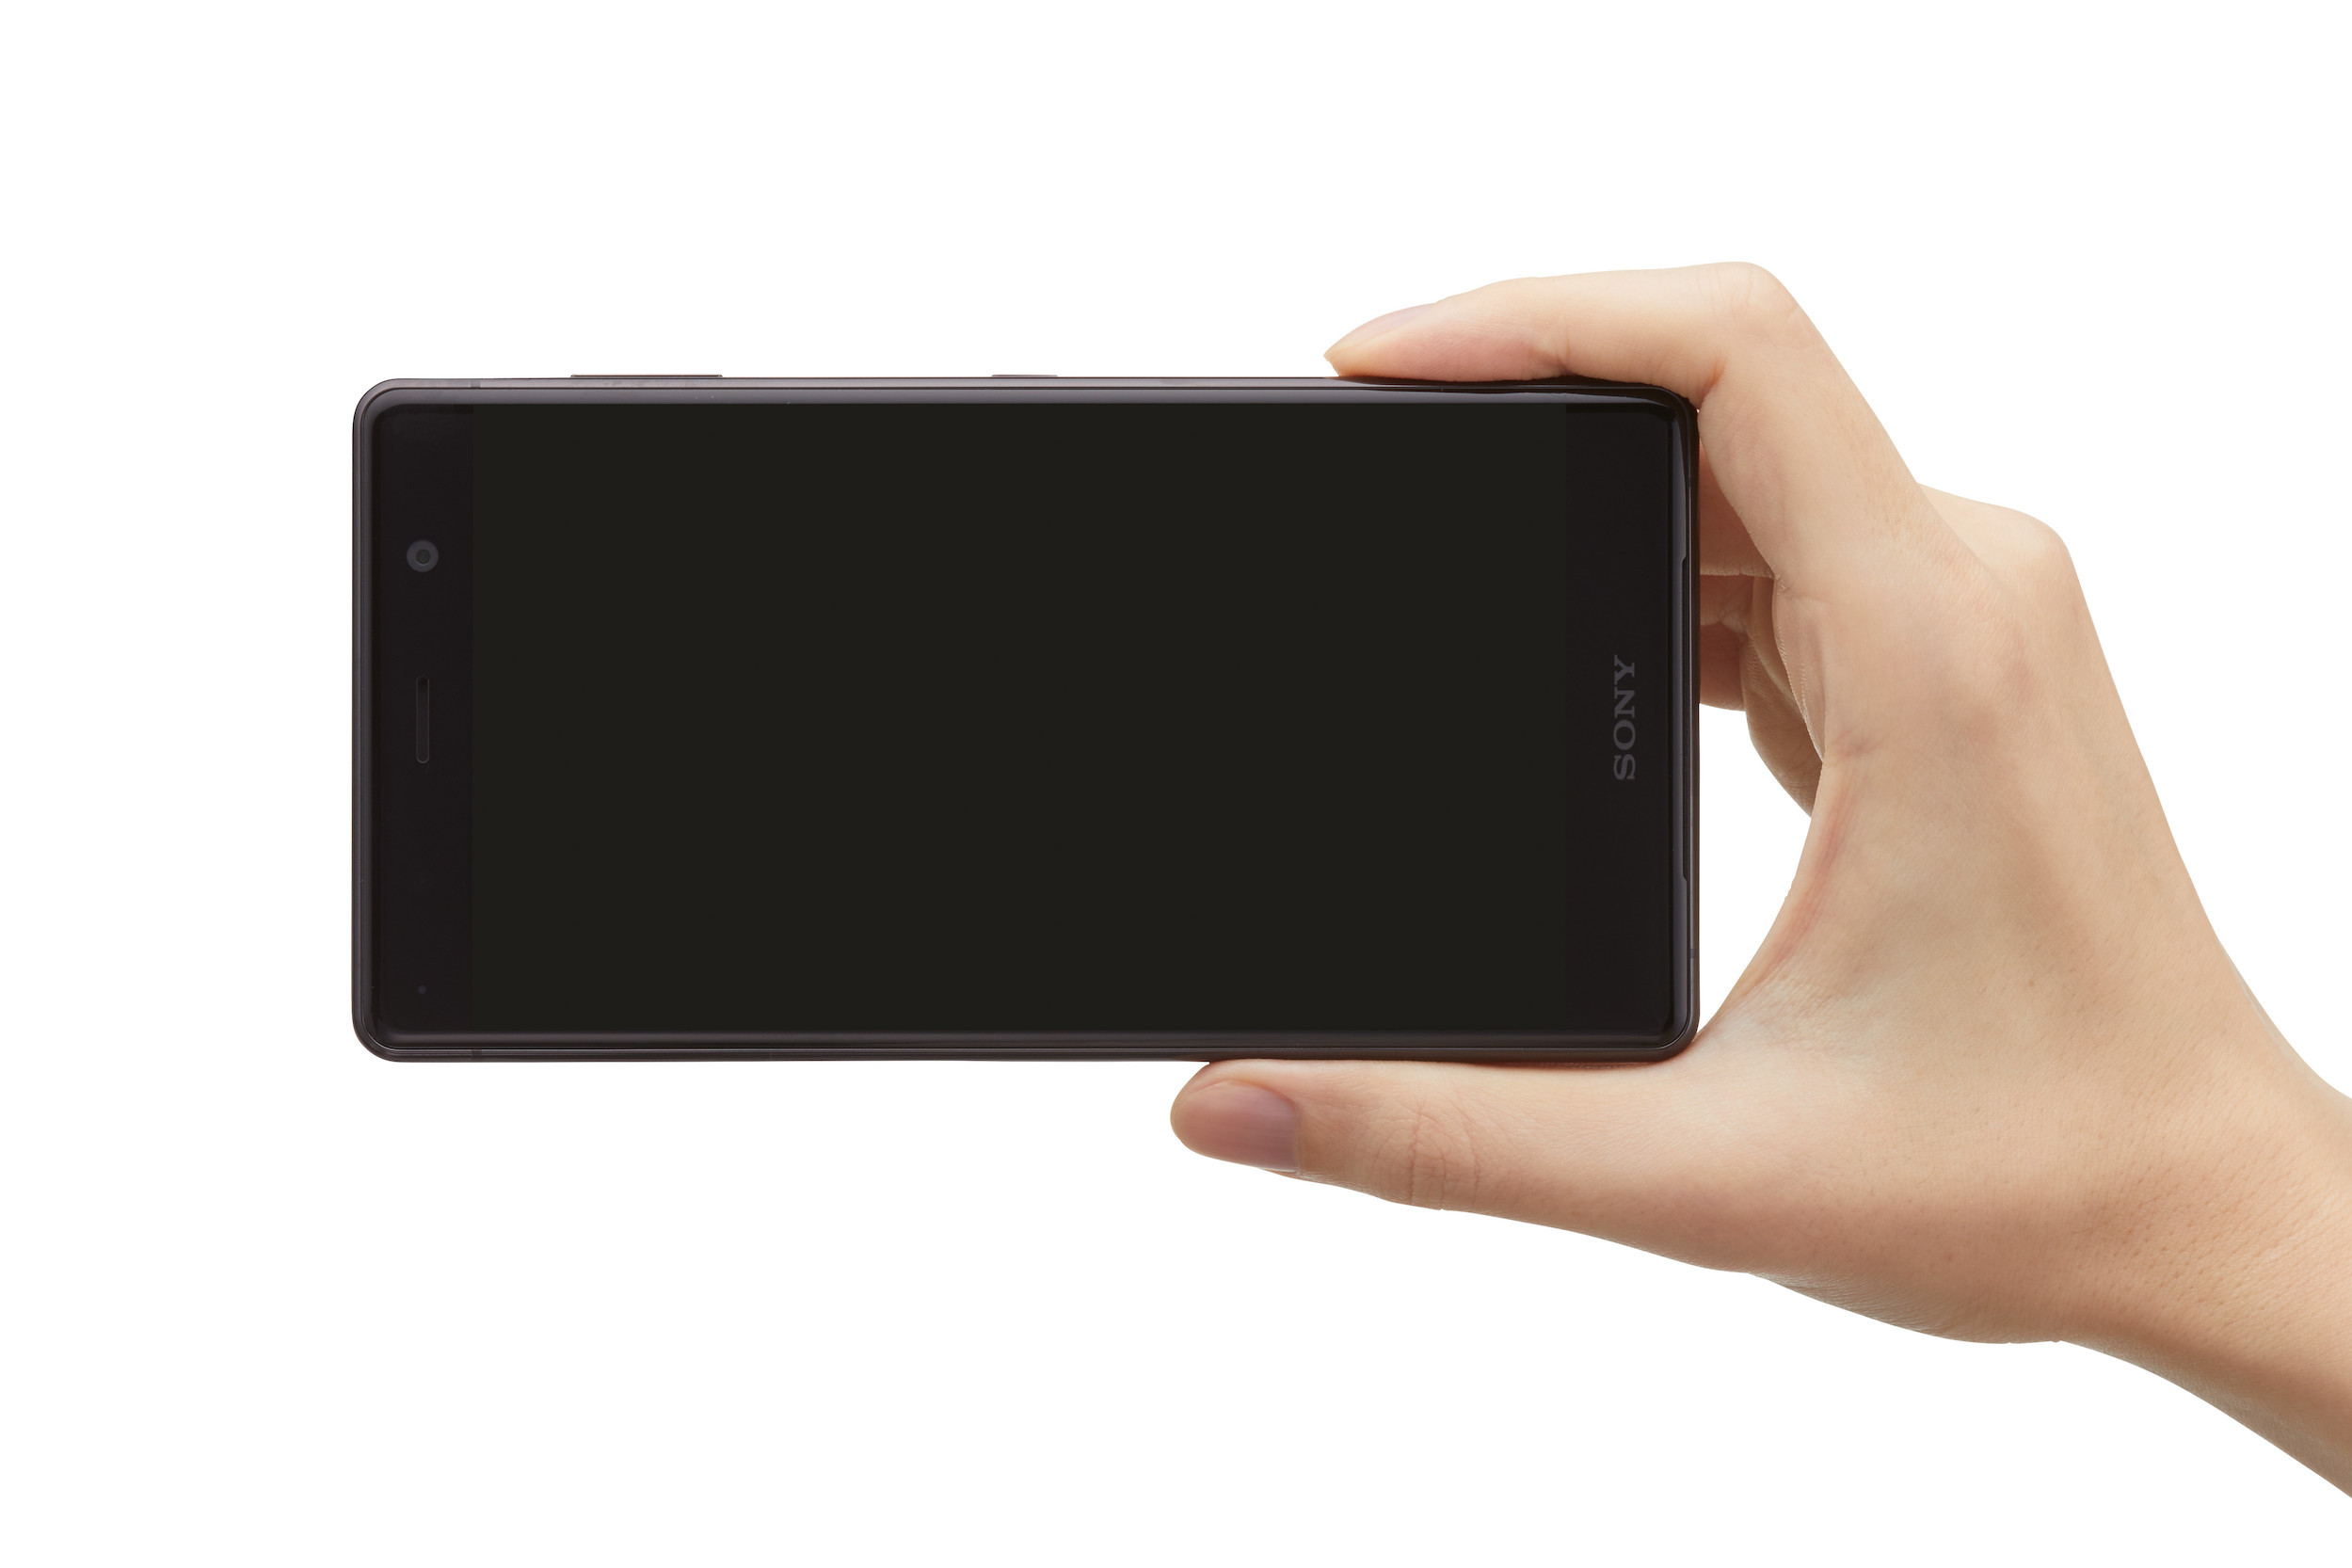 Sony công bố Xperia XZ2 Premium với màn hình 4K HDR và camera kép